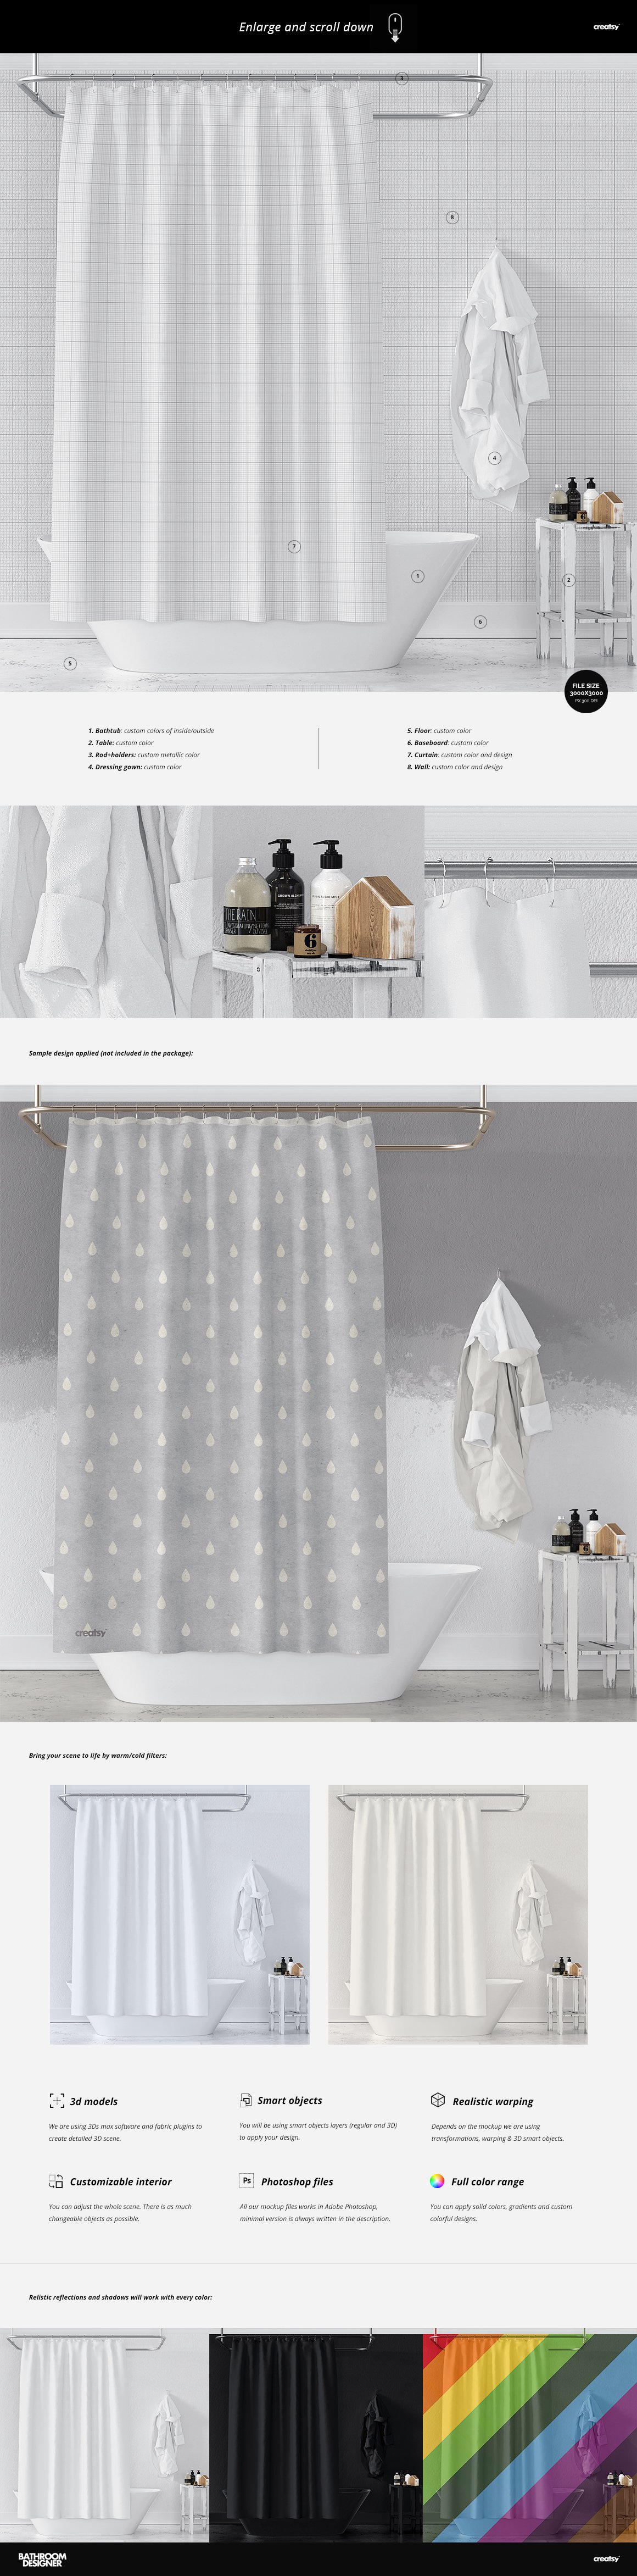 洗浴帘子毛巾浴缸浴室场景装修设计贴图样机模板 Bathroo